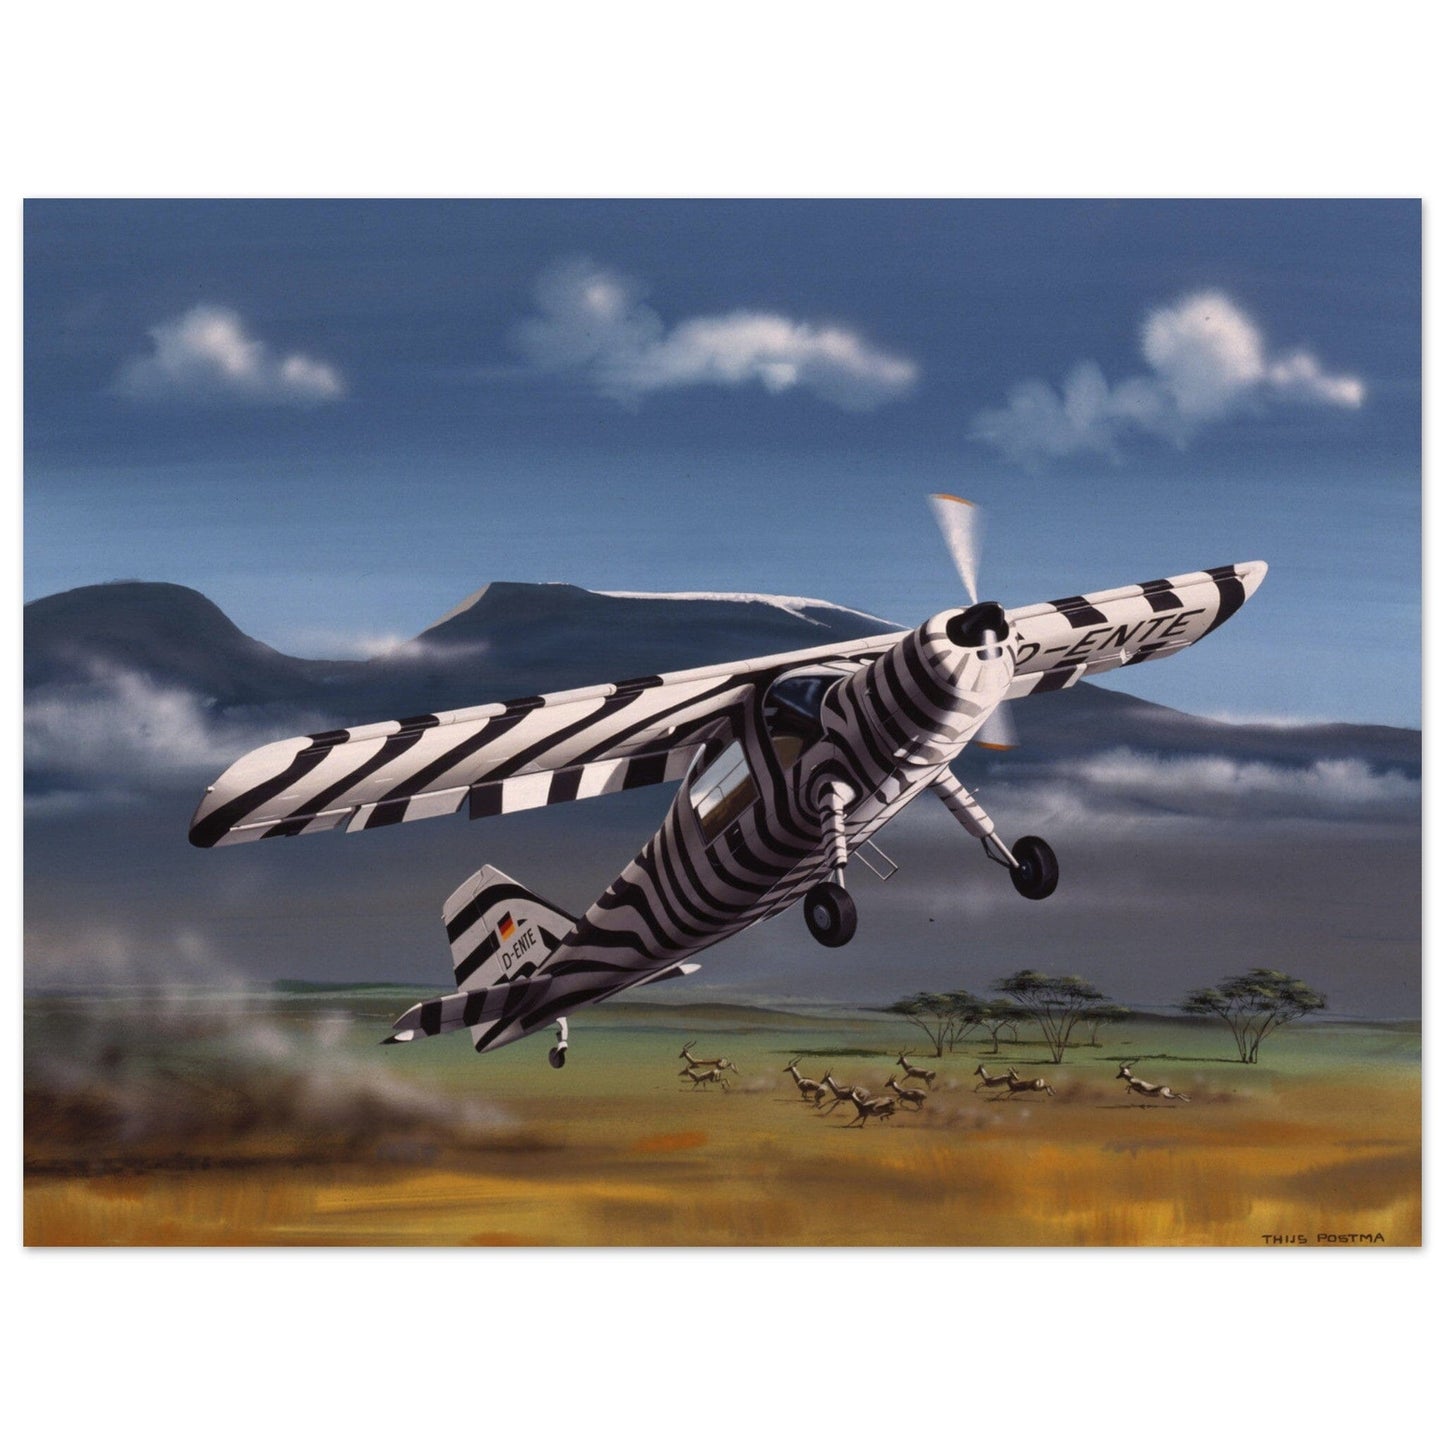 Thijs Postma - Poster - Dornier Do 27 Grzimek Serengeti Poster Only TP Aviation Art 45x60 cm / 18x24″ 